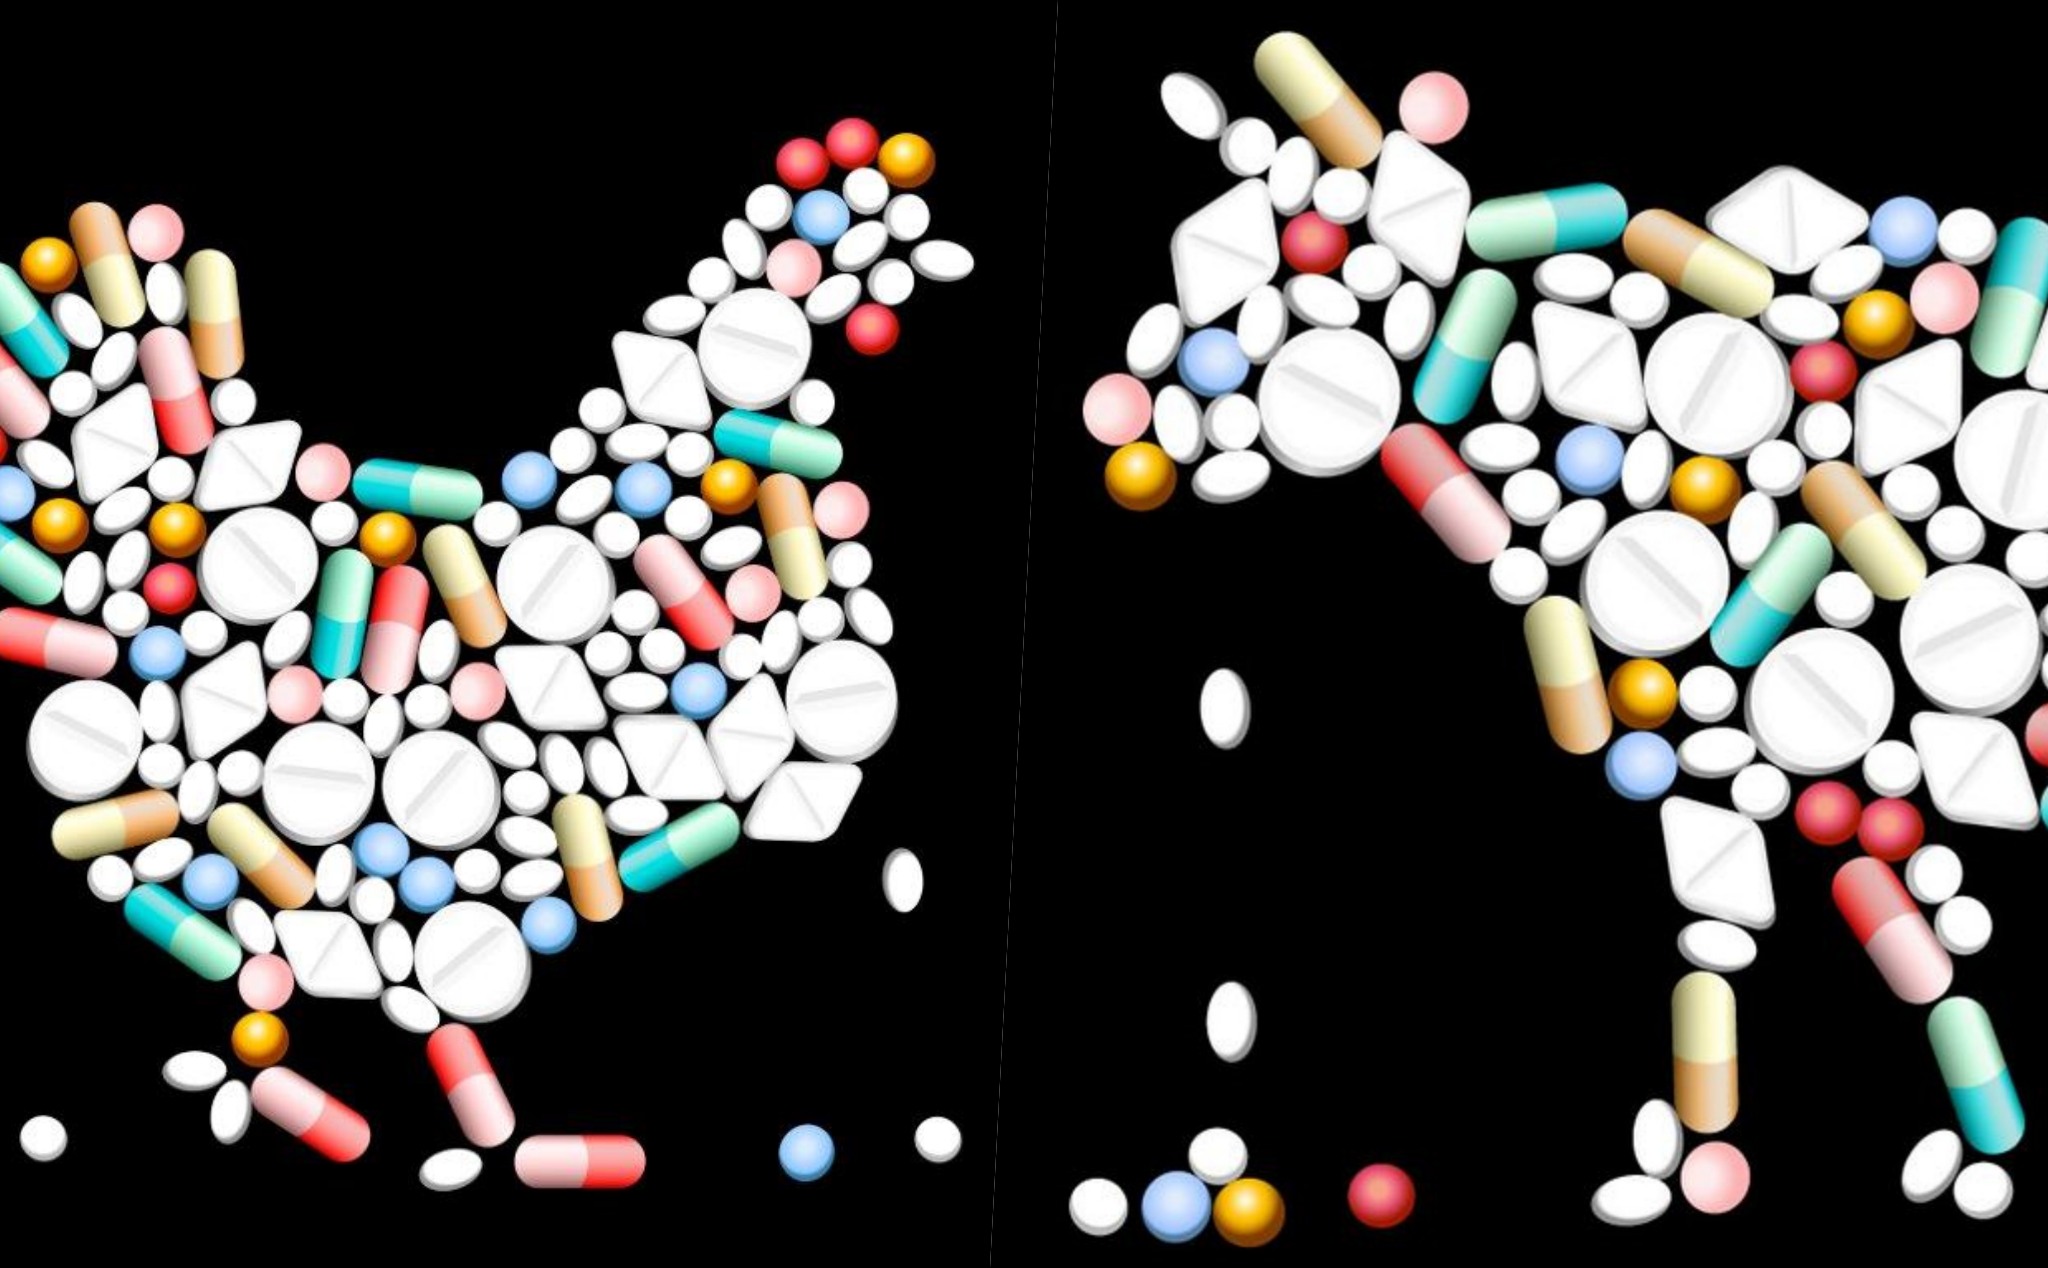 Liên Hiệp Quốc ra thông báo khẩn cấp về vấn đề kháng thuốc kháng sinh trên toàn cầu